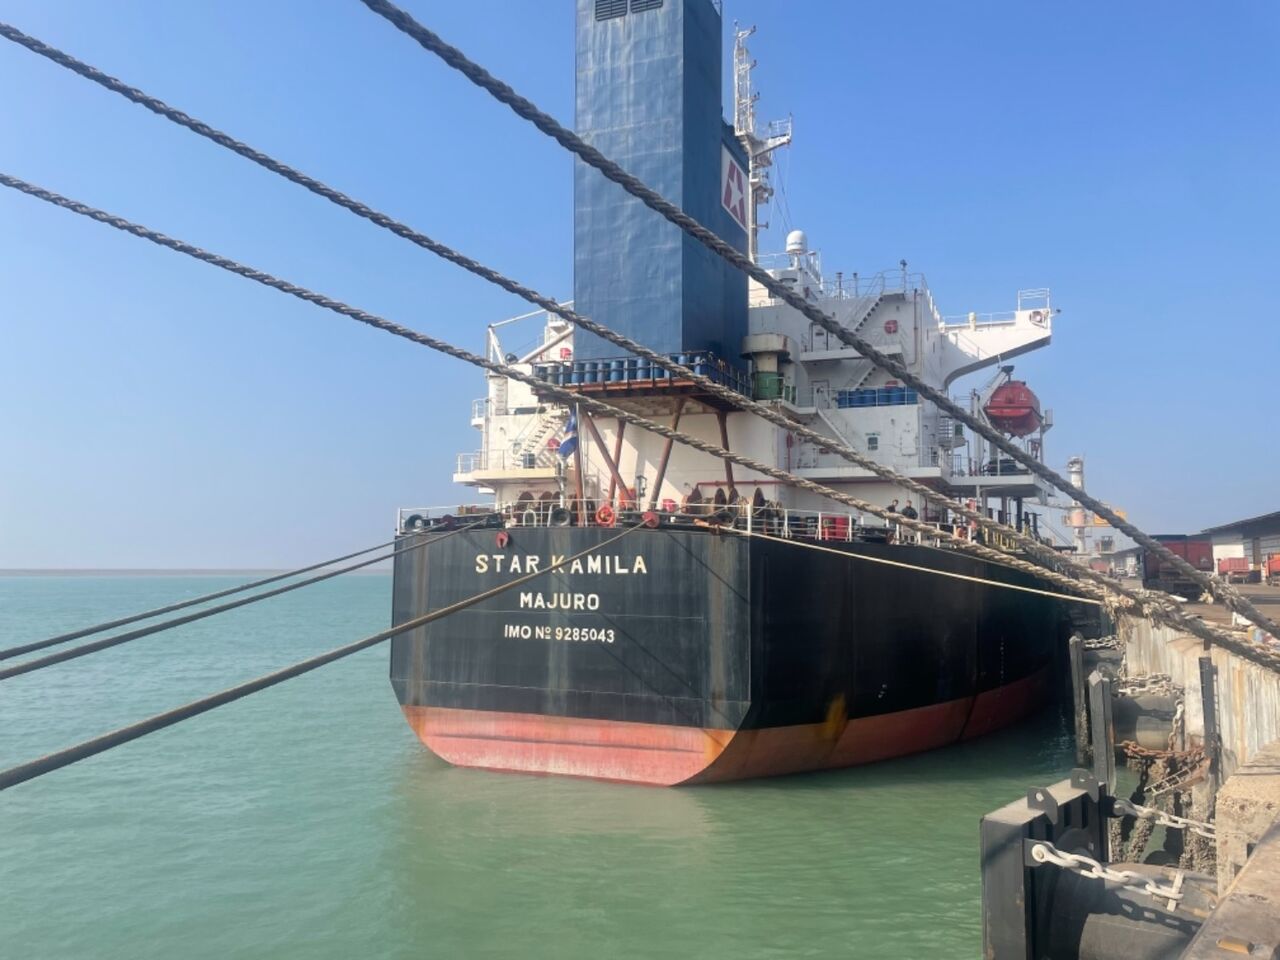 افزایش تقاضای خارجی برای تعمیر کشتی در ایران